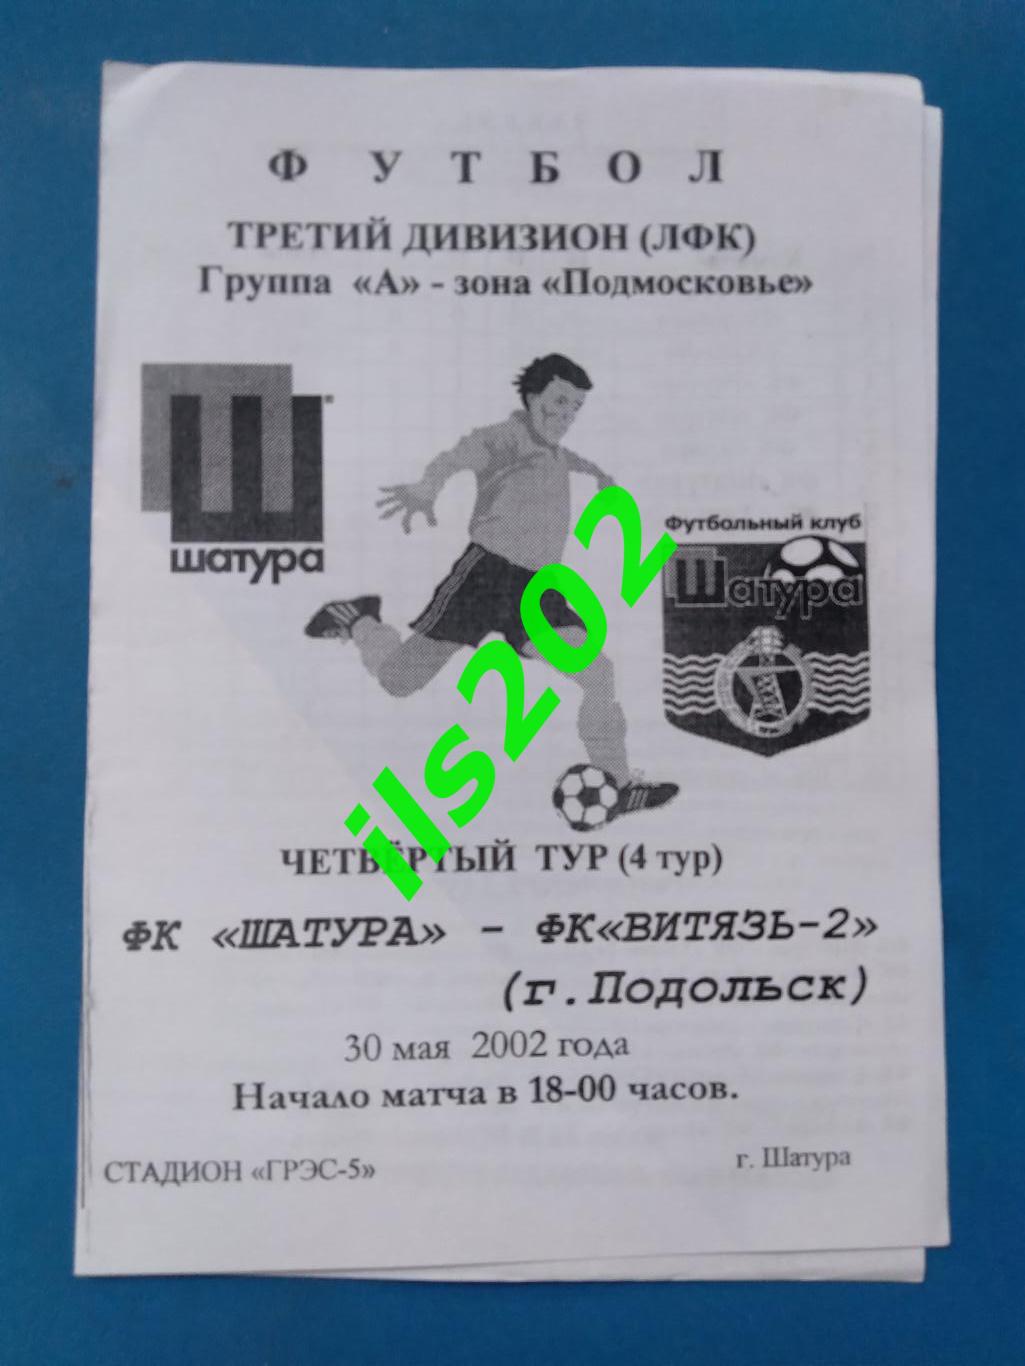 ФК Шатура - Витязь-2 Подольск 2002